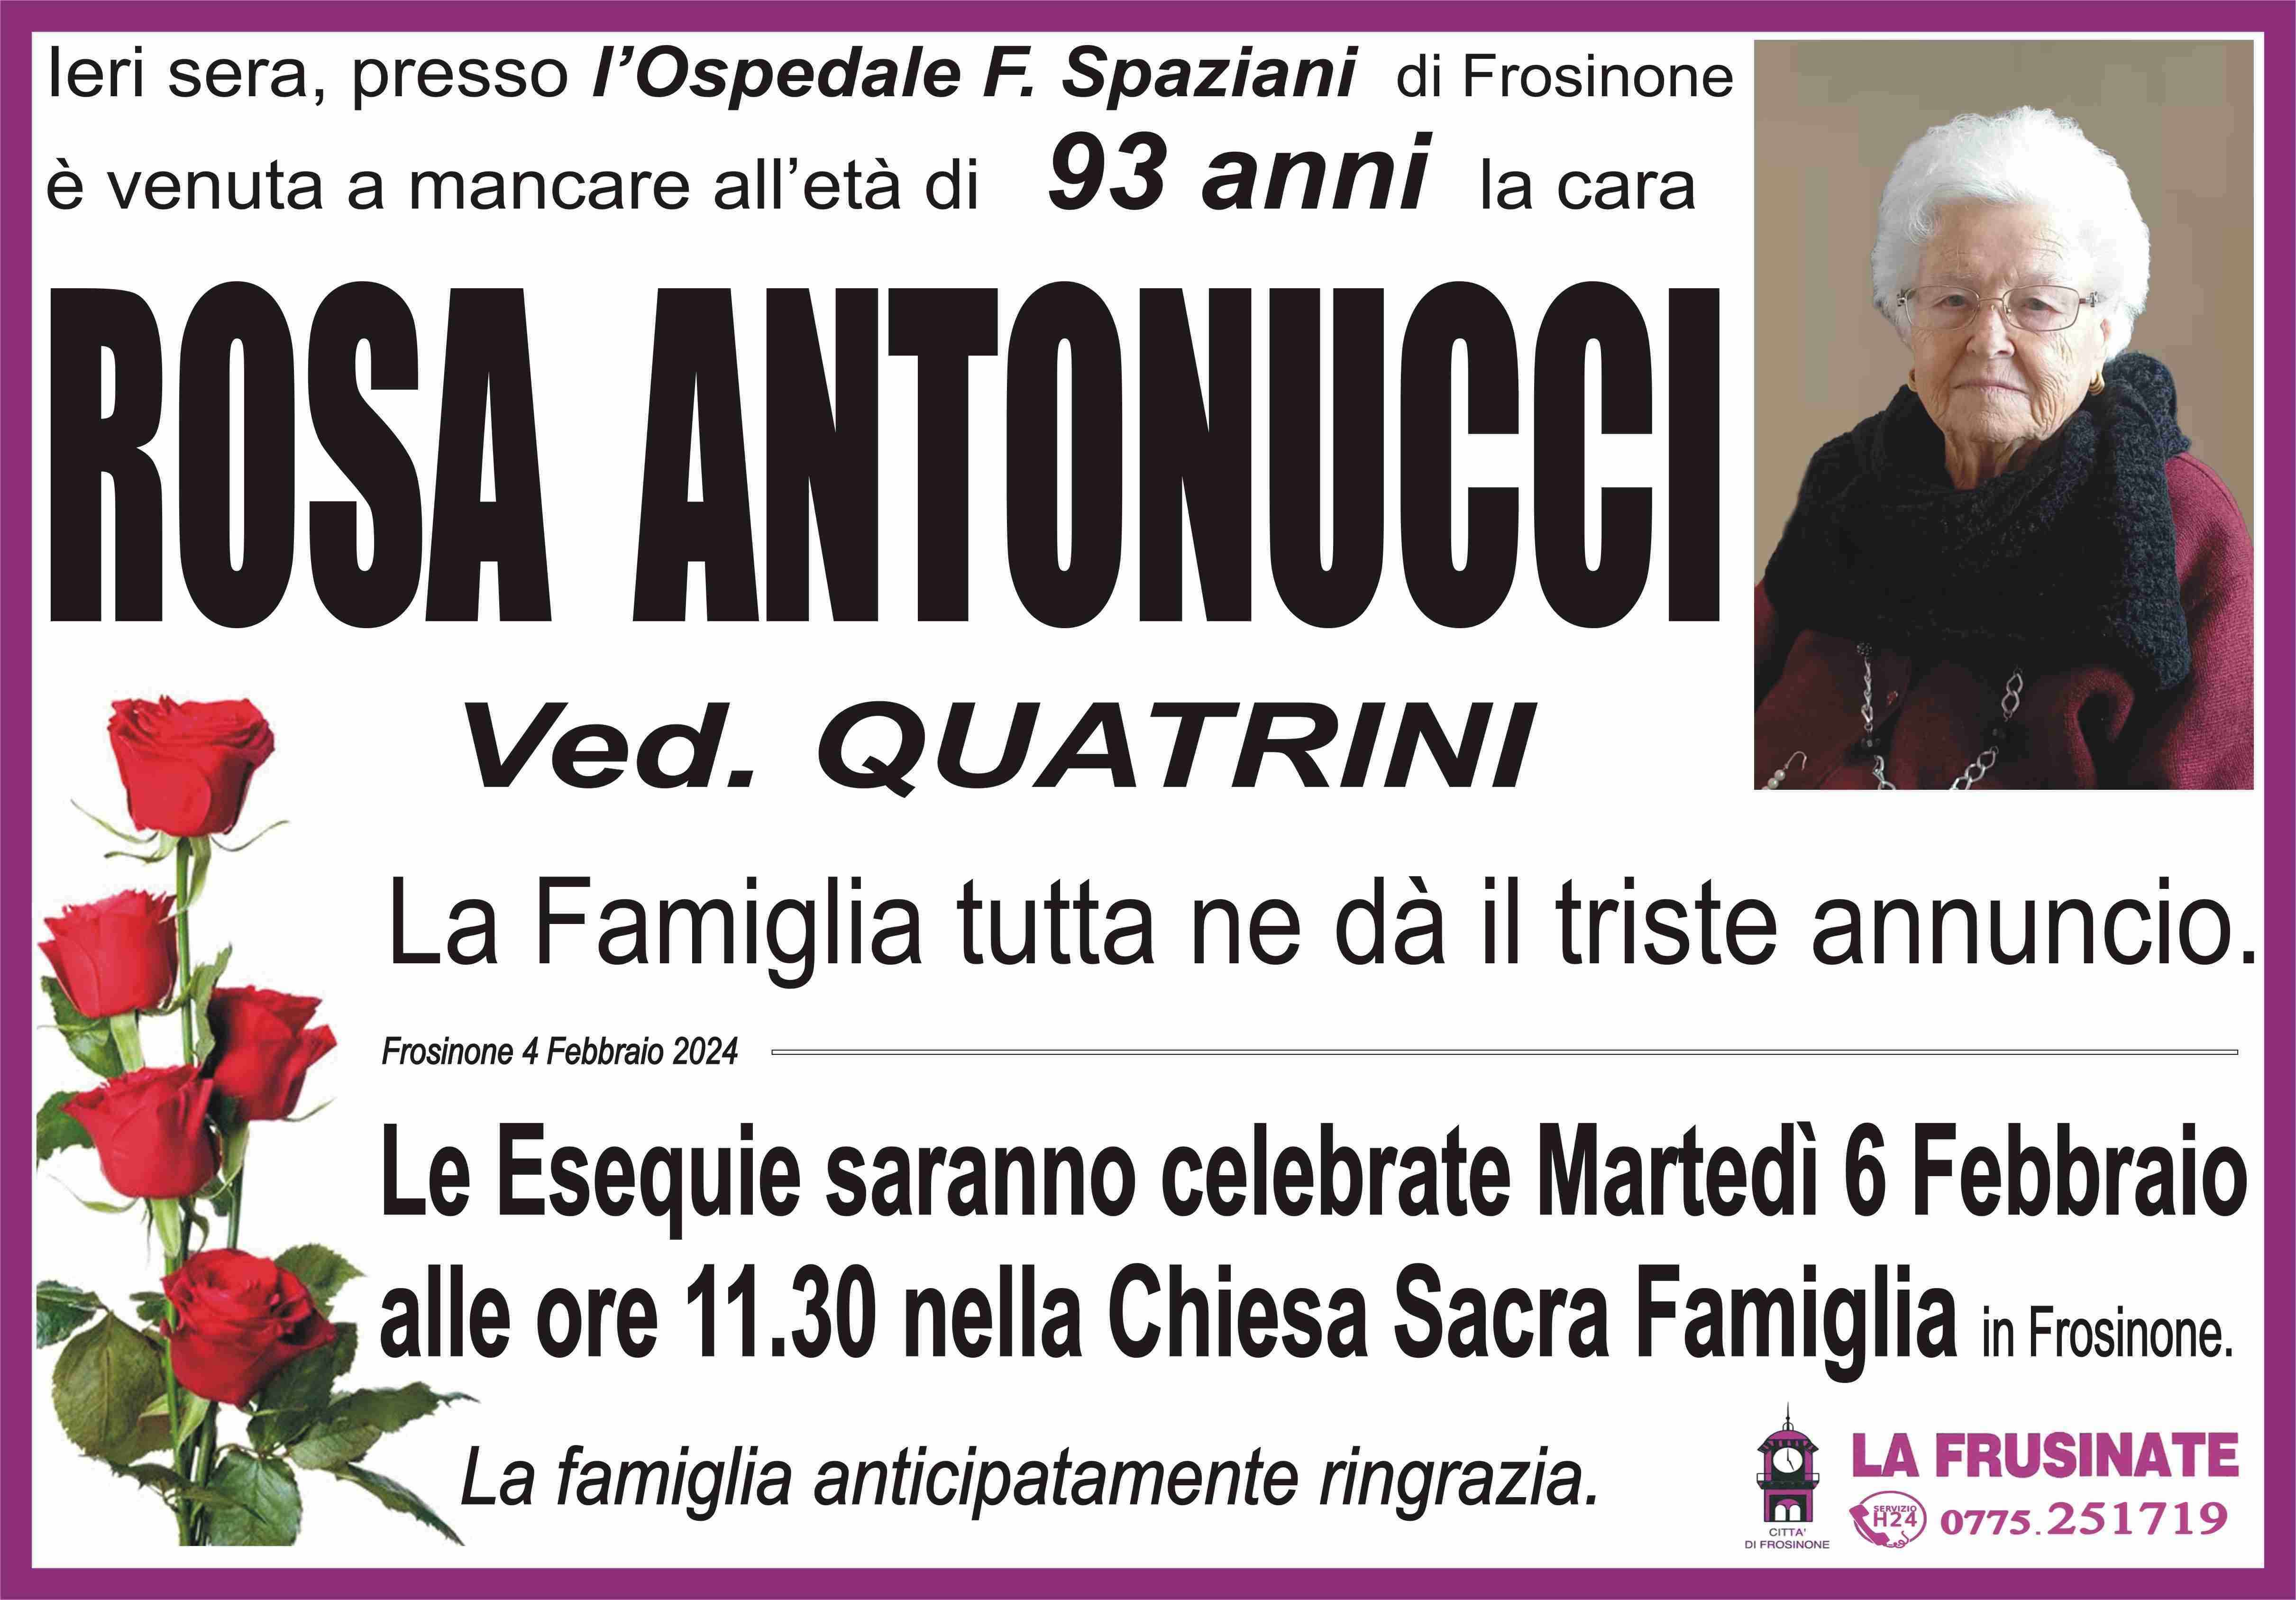 Rosa Antonucci